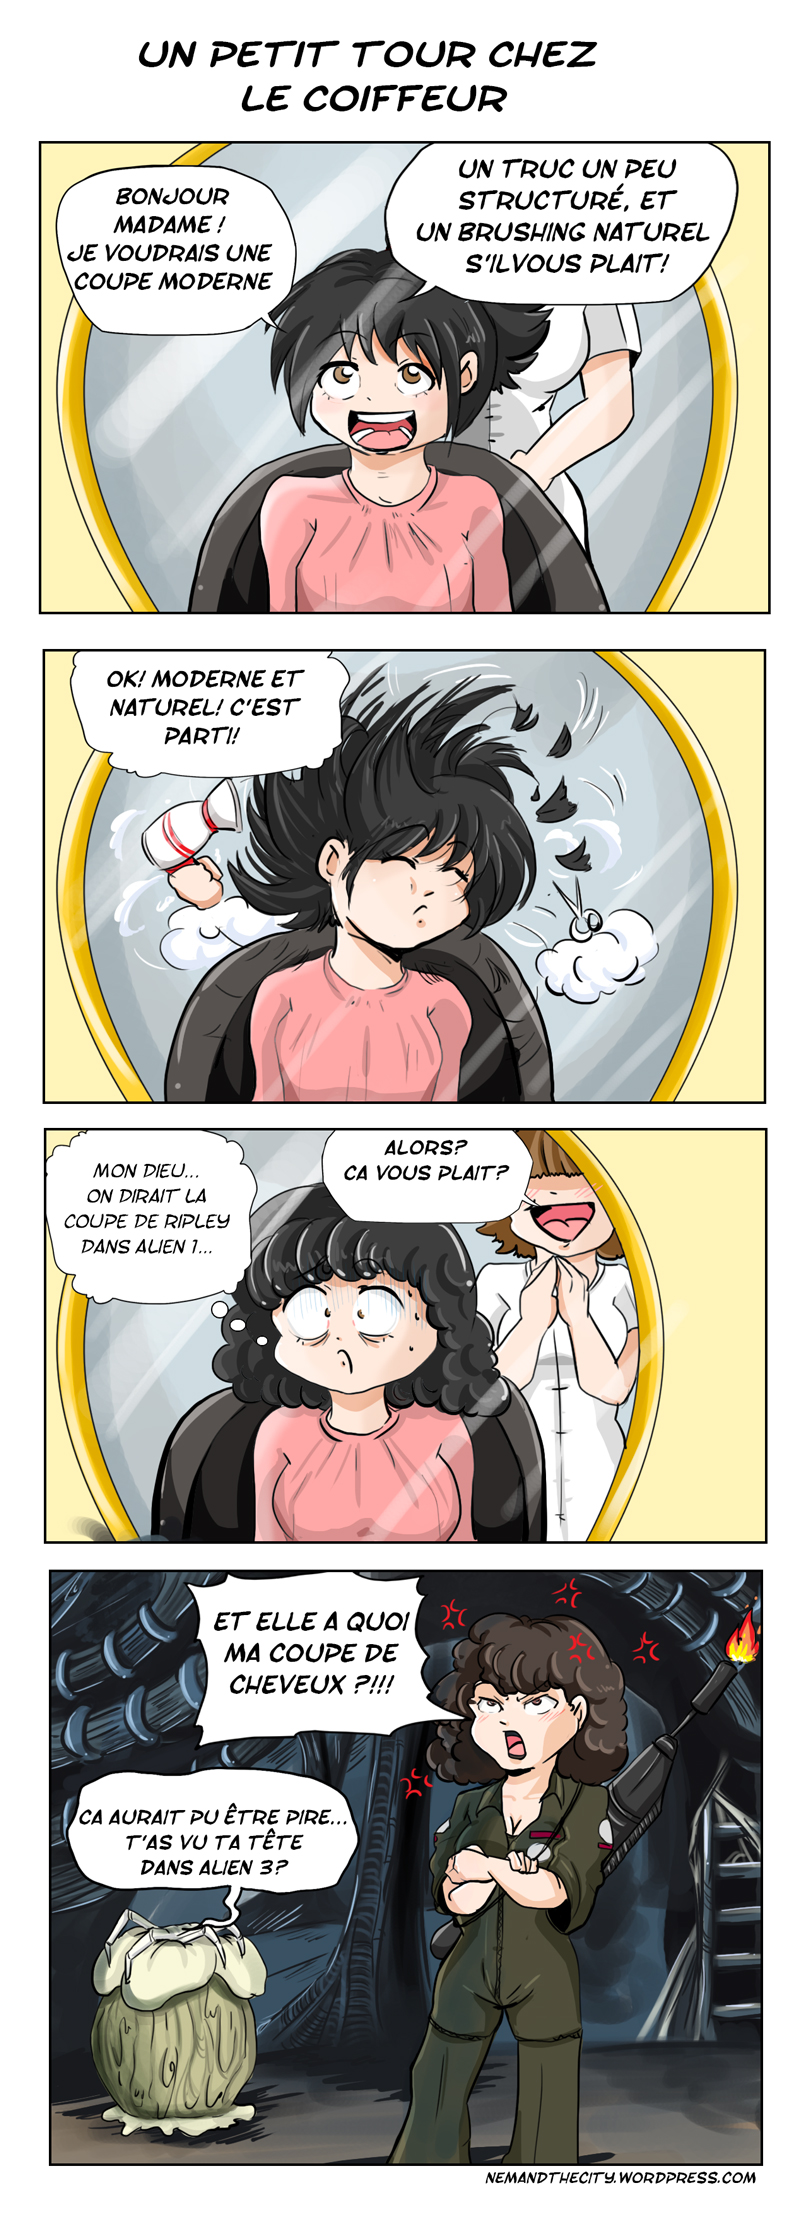 comic strip d'une mésaventure chez le coiffeur, et référence à Alien